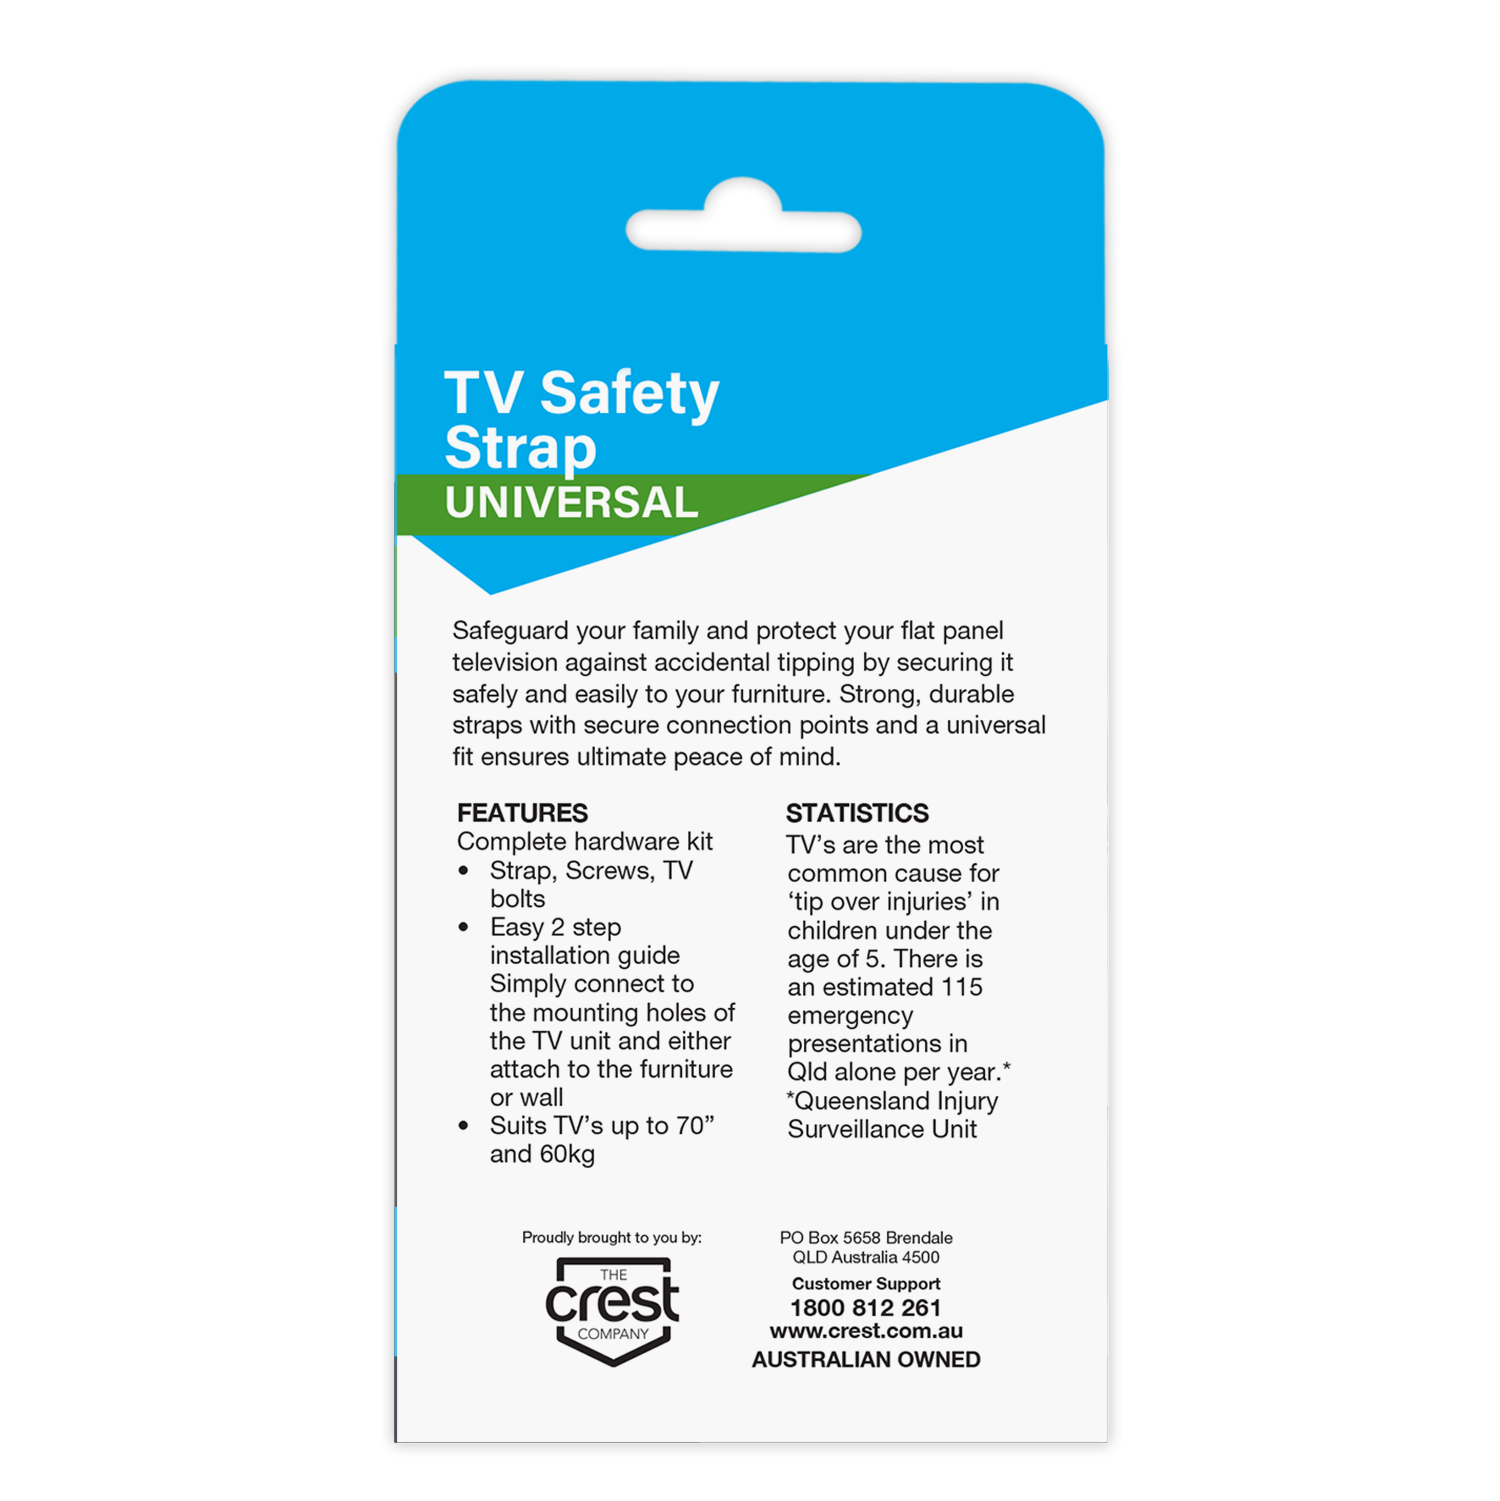 TV Safety Strap - 60KG